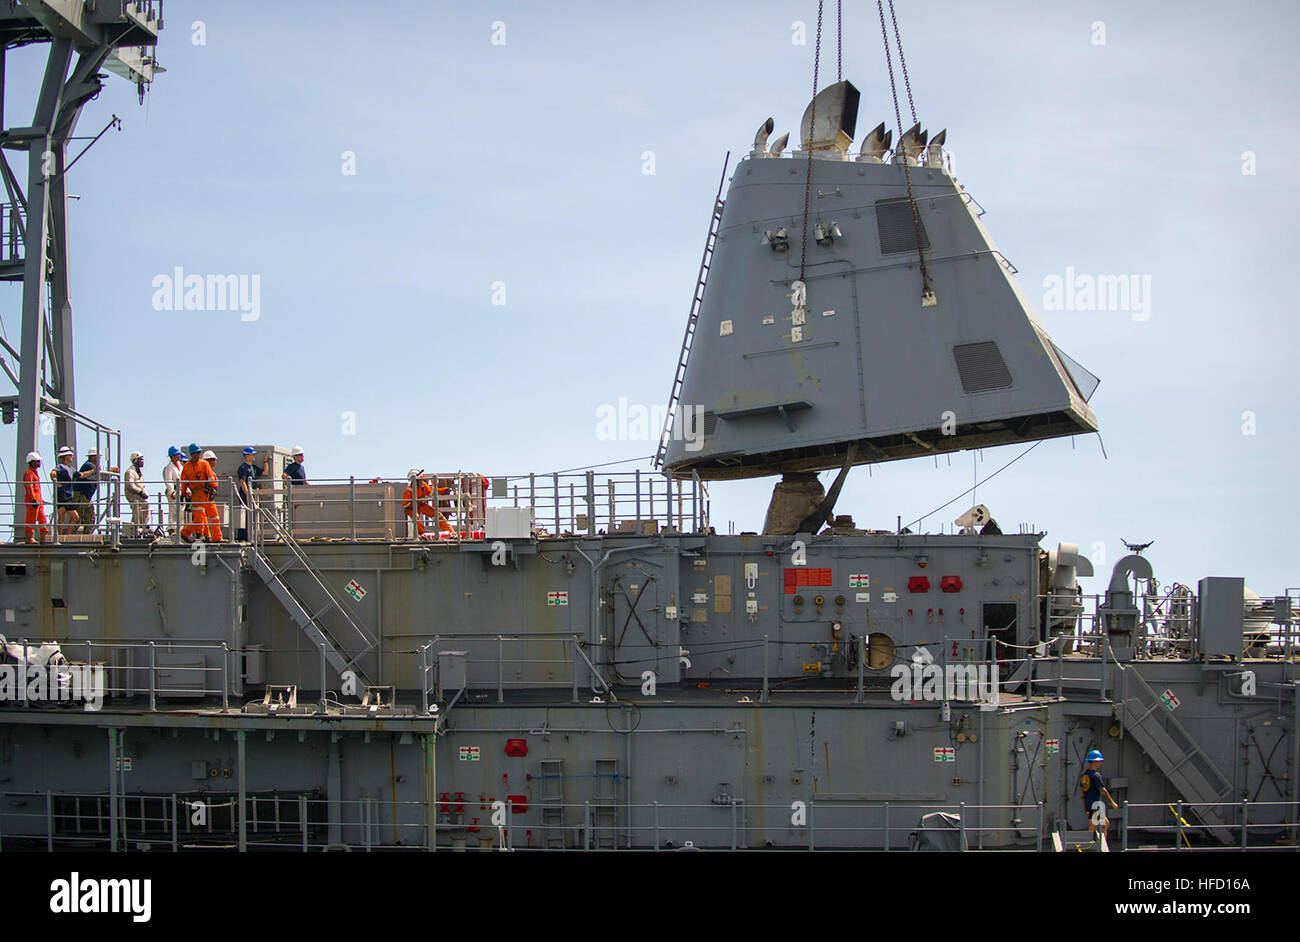 Mare di Sulu (feb. 25, 2013) marinai da Mobile Diving e unità di soccorso (MDSU) 1 E STATI UNITI Navy contratta di salvataggio dei membri di equipaggio dalla M/V Jascon 25 rimuovere in modo sicuro lo scarico struttura ad imbuto dalla miniera contromisure nave USS Custode (MCM 5). Custode si è arenata sulla di Tubbataha Reef gen. 17. L'imbuto di distacco è stata una pietra miliare nel processo di smantellamento del guardiano. Gli Stati Uniti Navy e contratta le squadre di soccorso sono tranquillamente lo smantellamento e la rimozione della nave di Tubbataha Reef. Gli Stati Uniti Navy continua a lavorare in stretta cooperazione con le autorità filippine a smantellare in modo sicuro Guardi Foto Stock